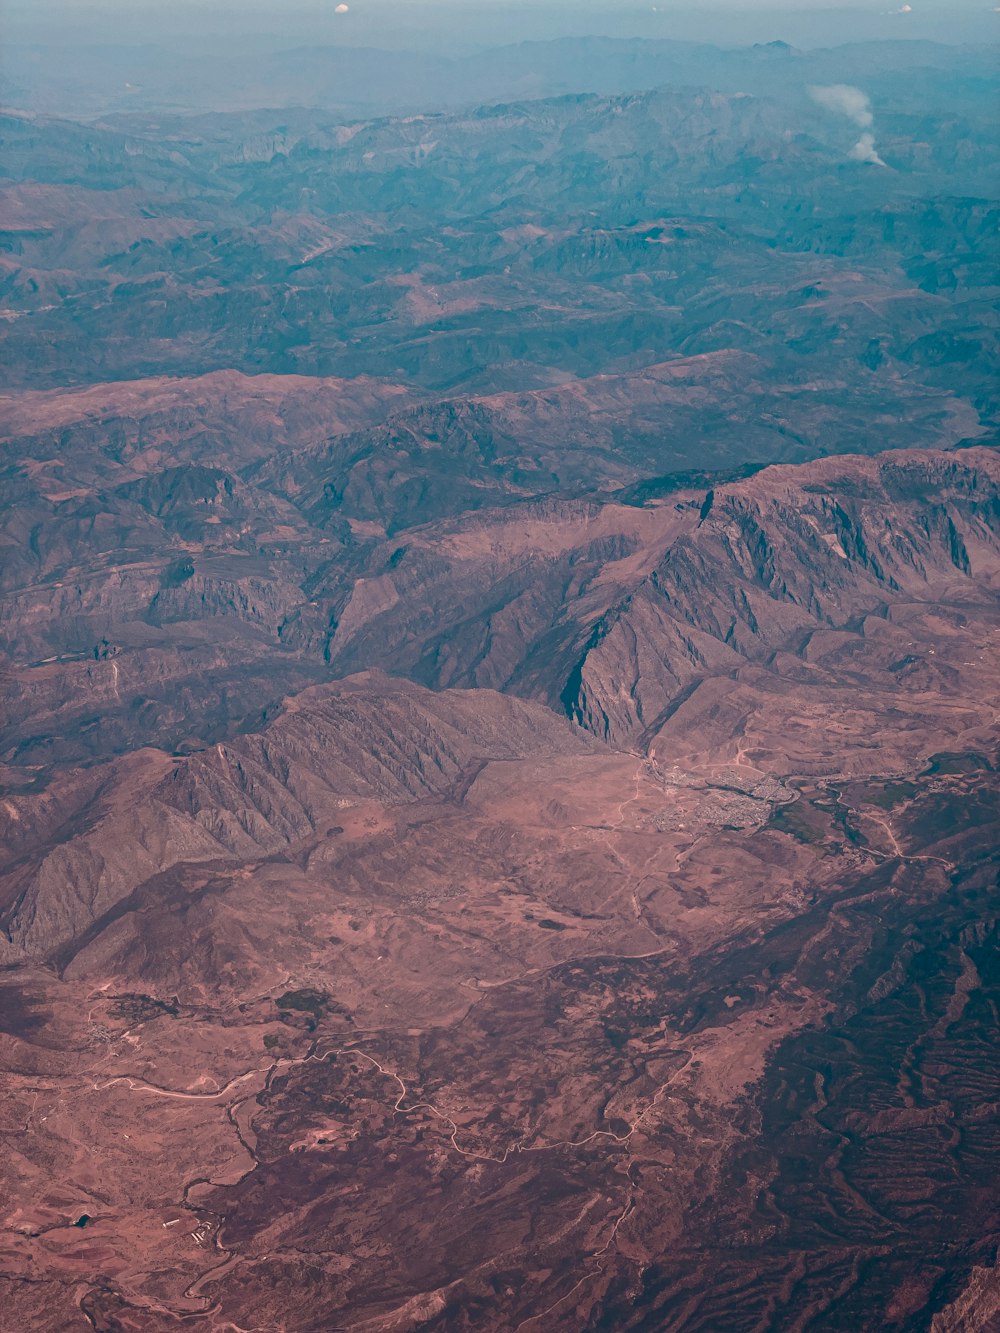 une vue d’une chaîne de montagnes depuis un avion